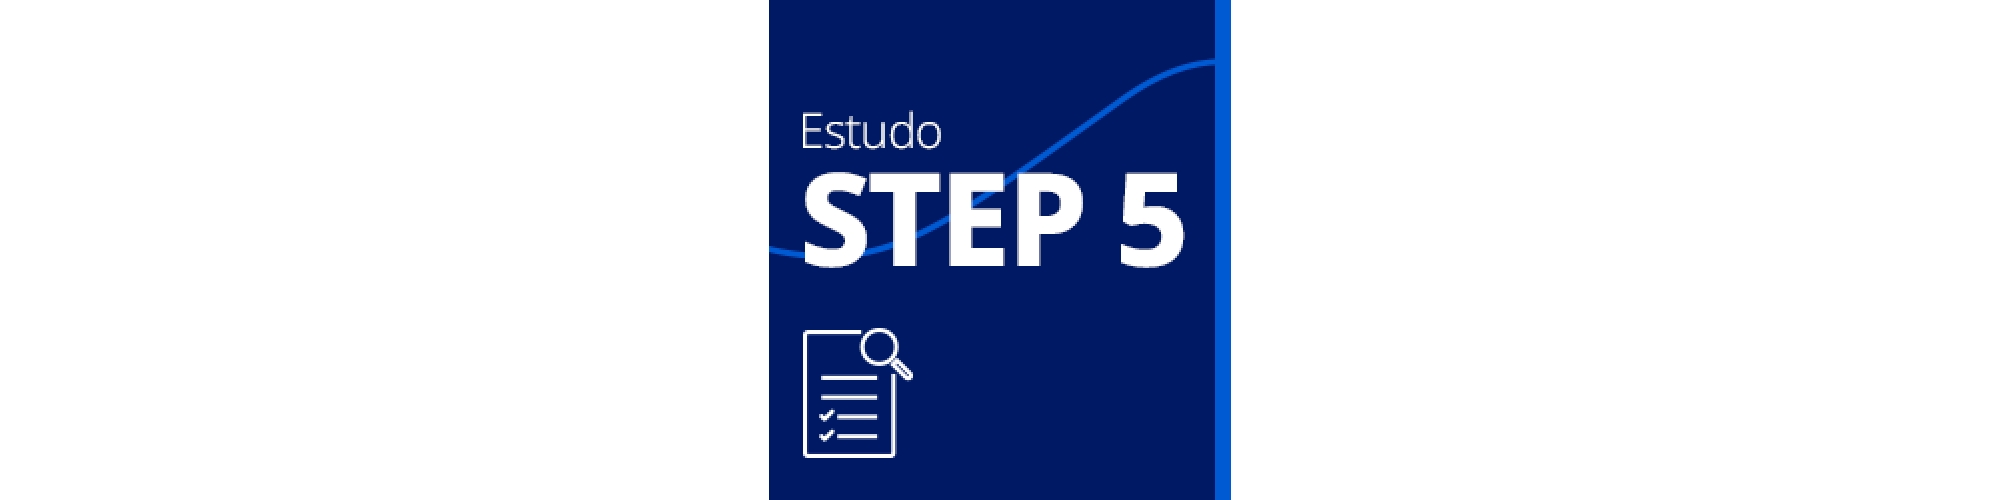 Estudo STEP 5